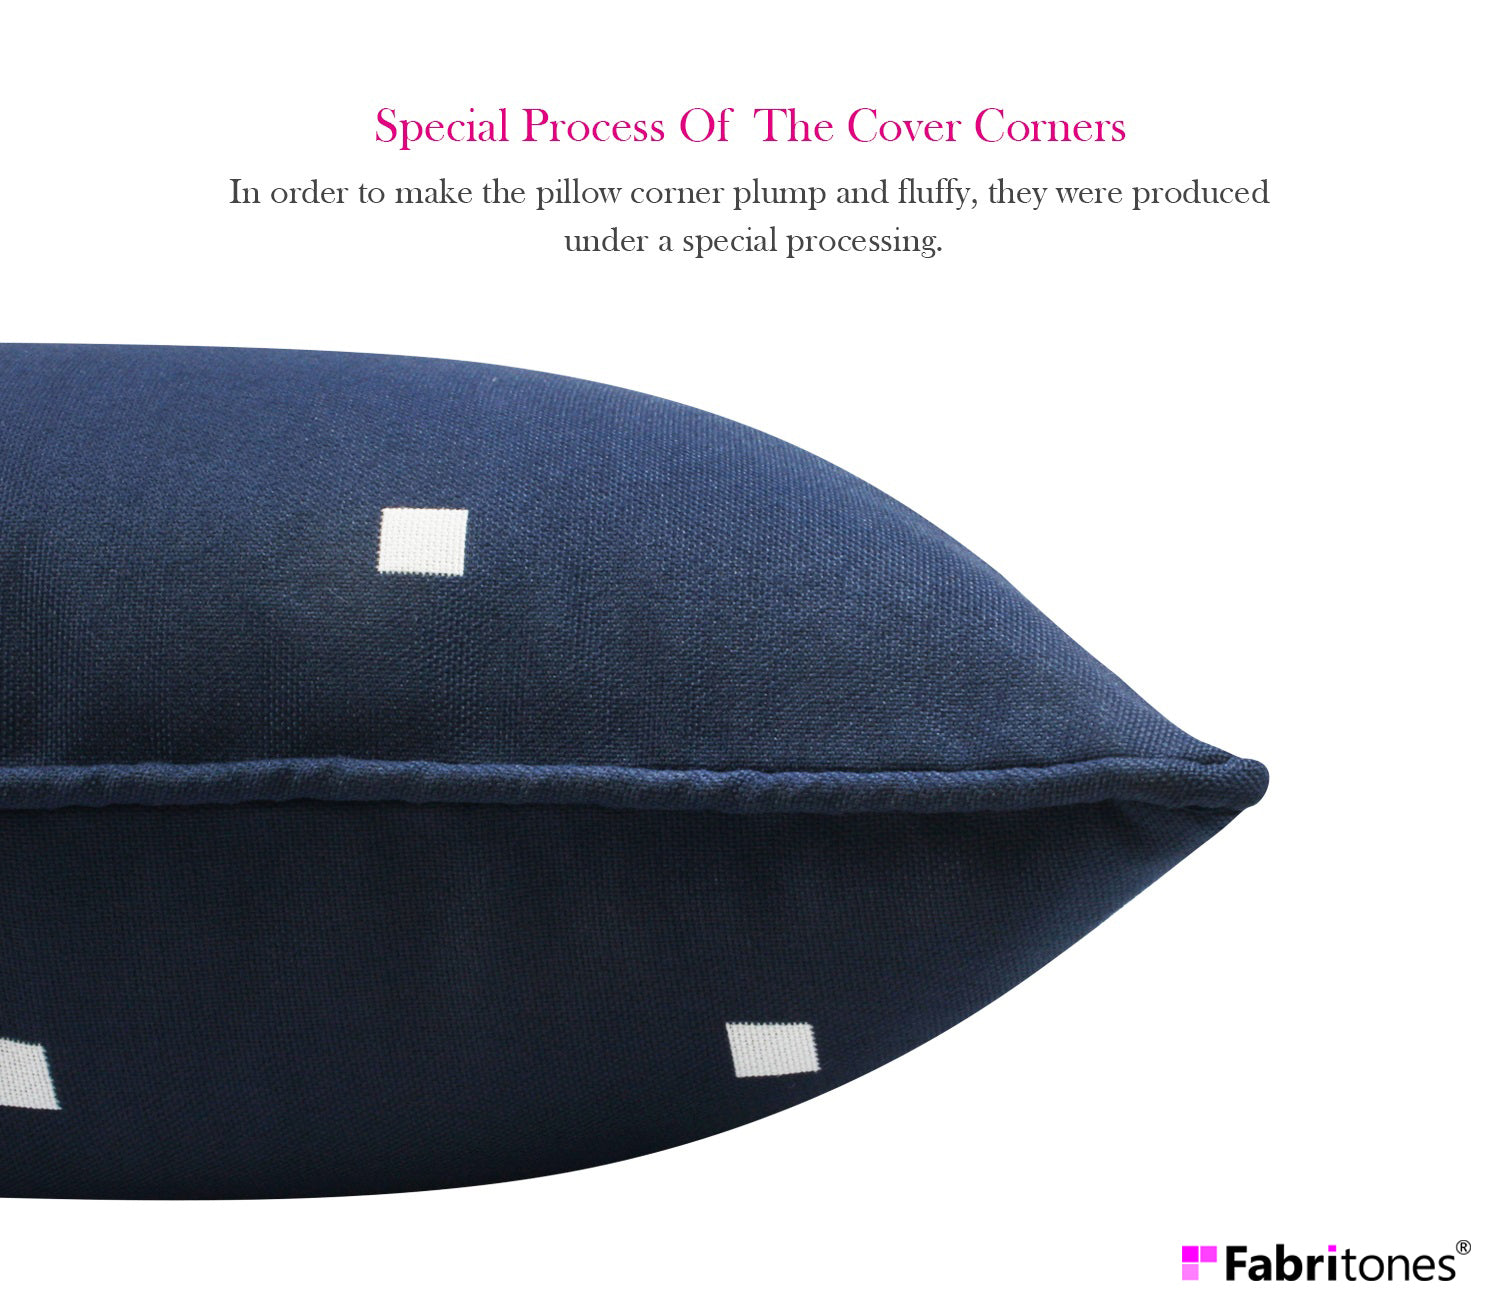 Outdoor Lumbar Pillows Rectangle 12x20 Inch Navy 2 Packs Patio Decorative Throw Pillows